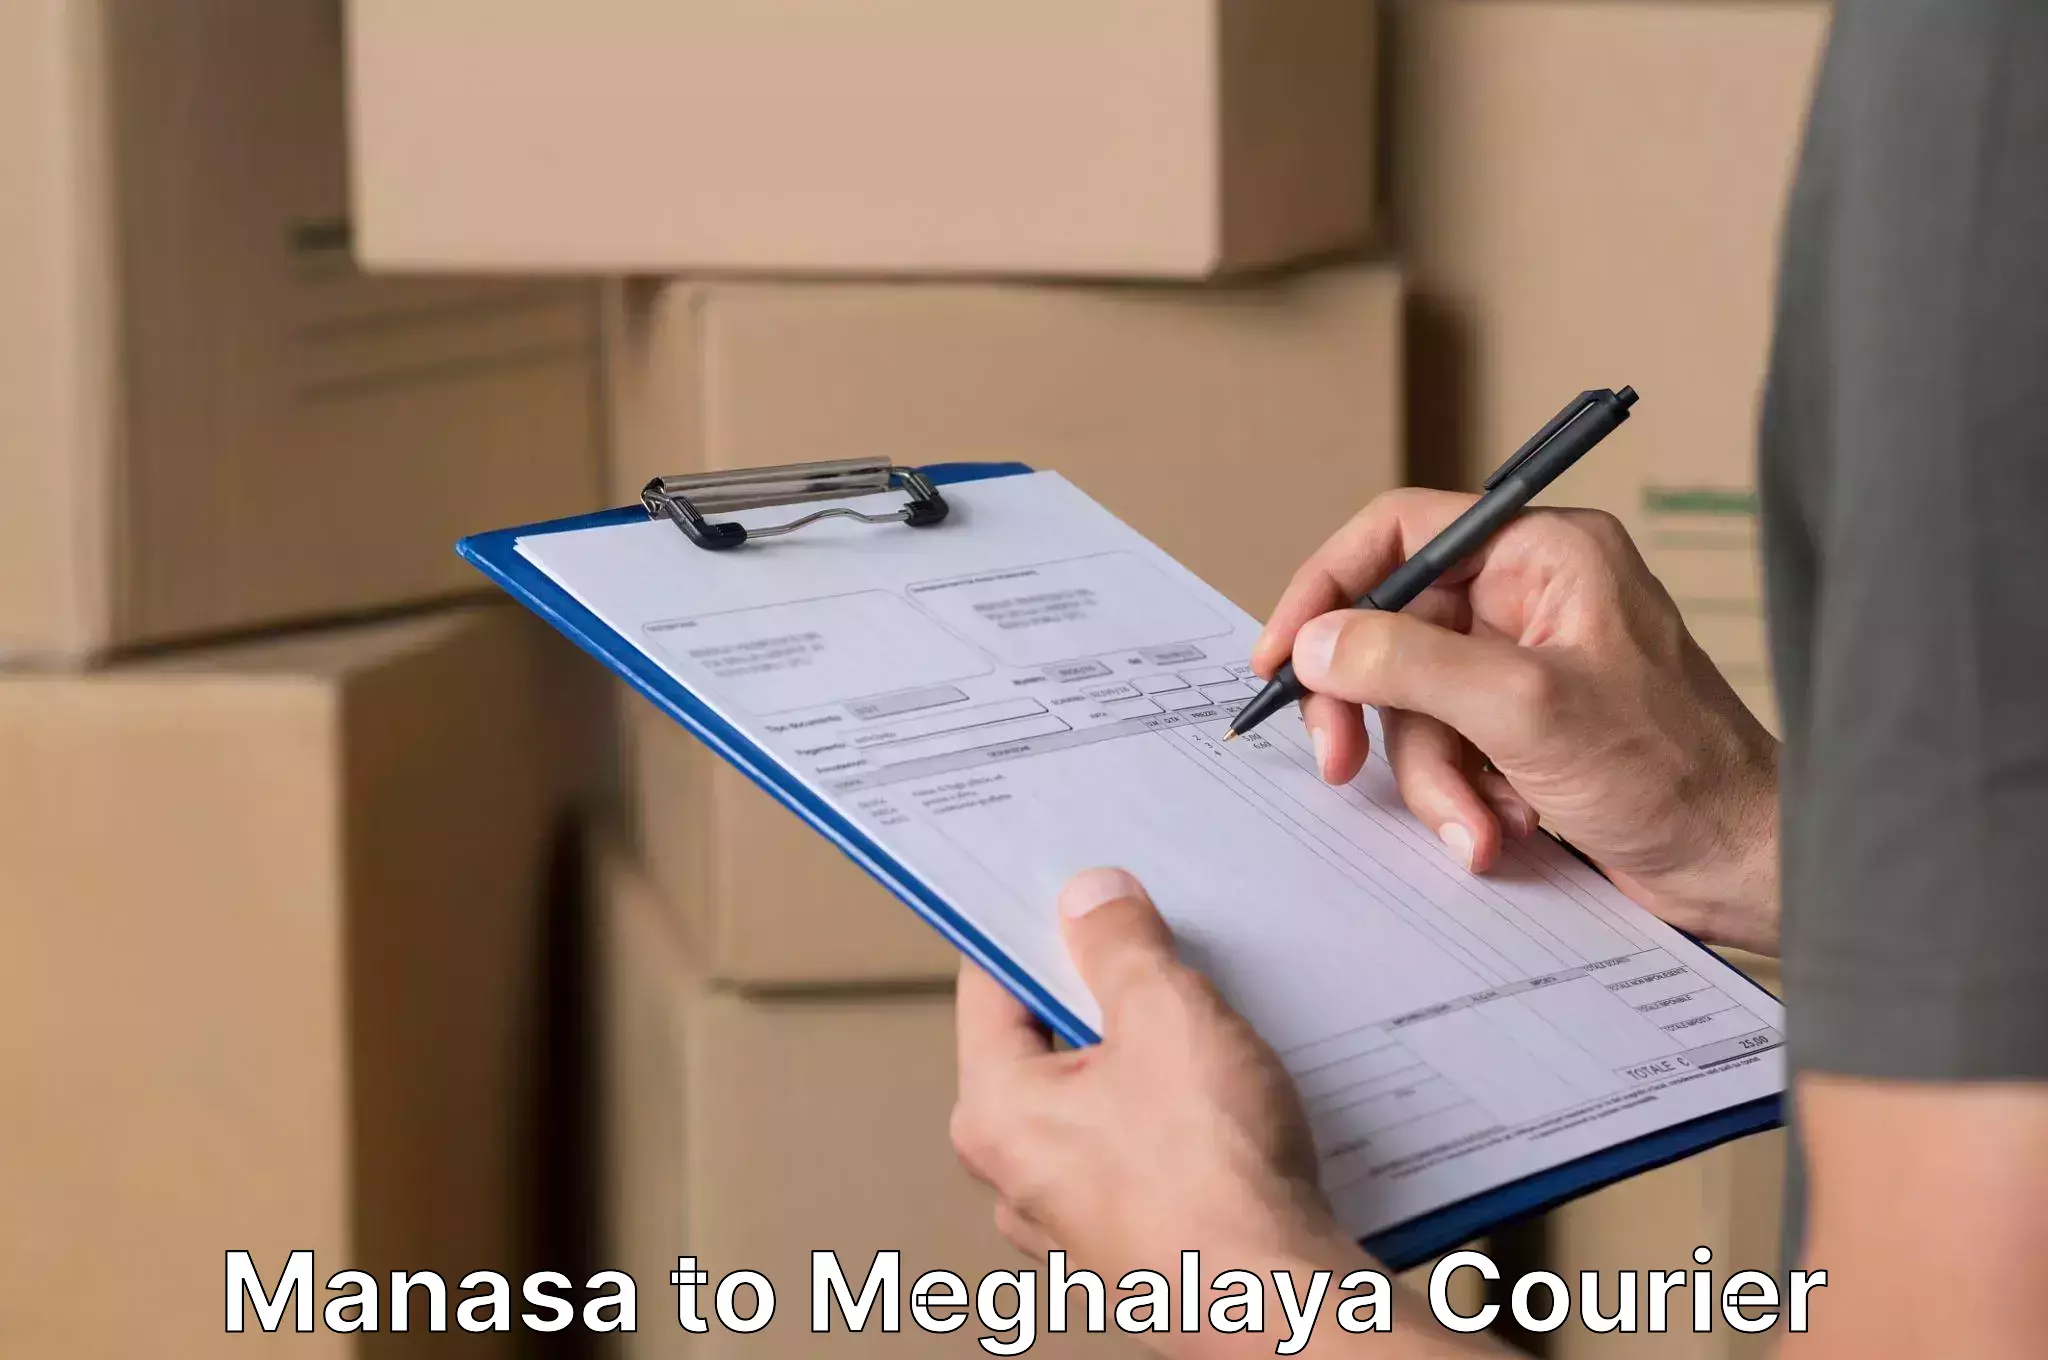 Specialized moving company Manasa to Shillong